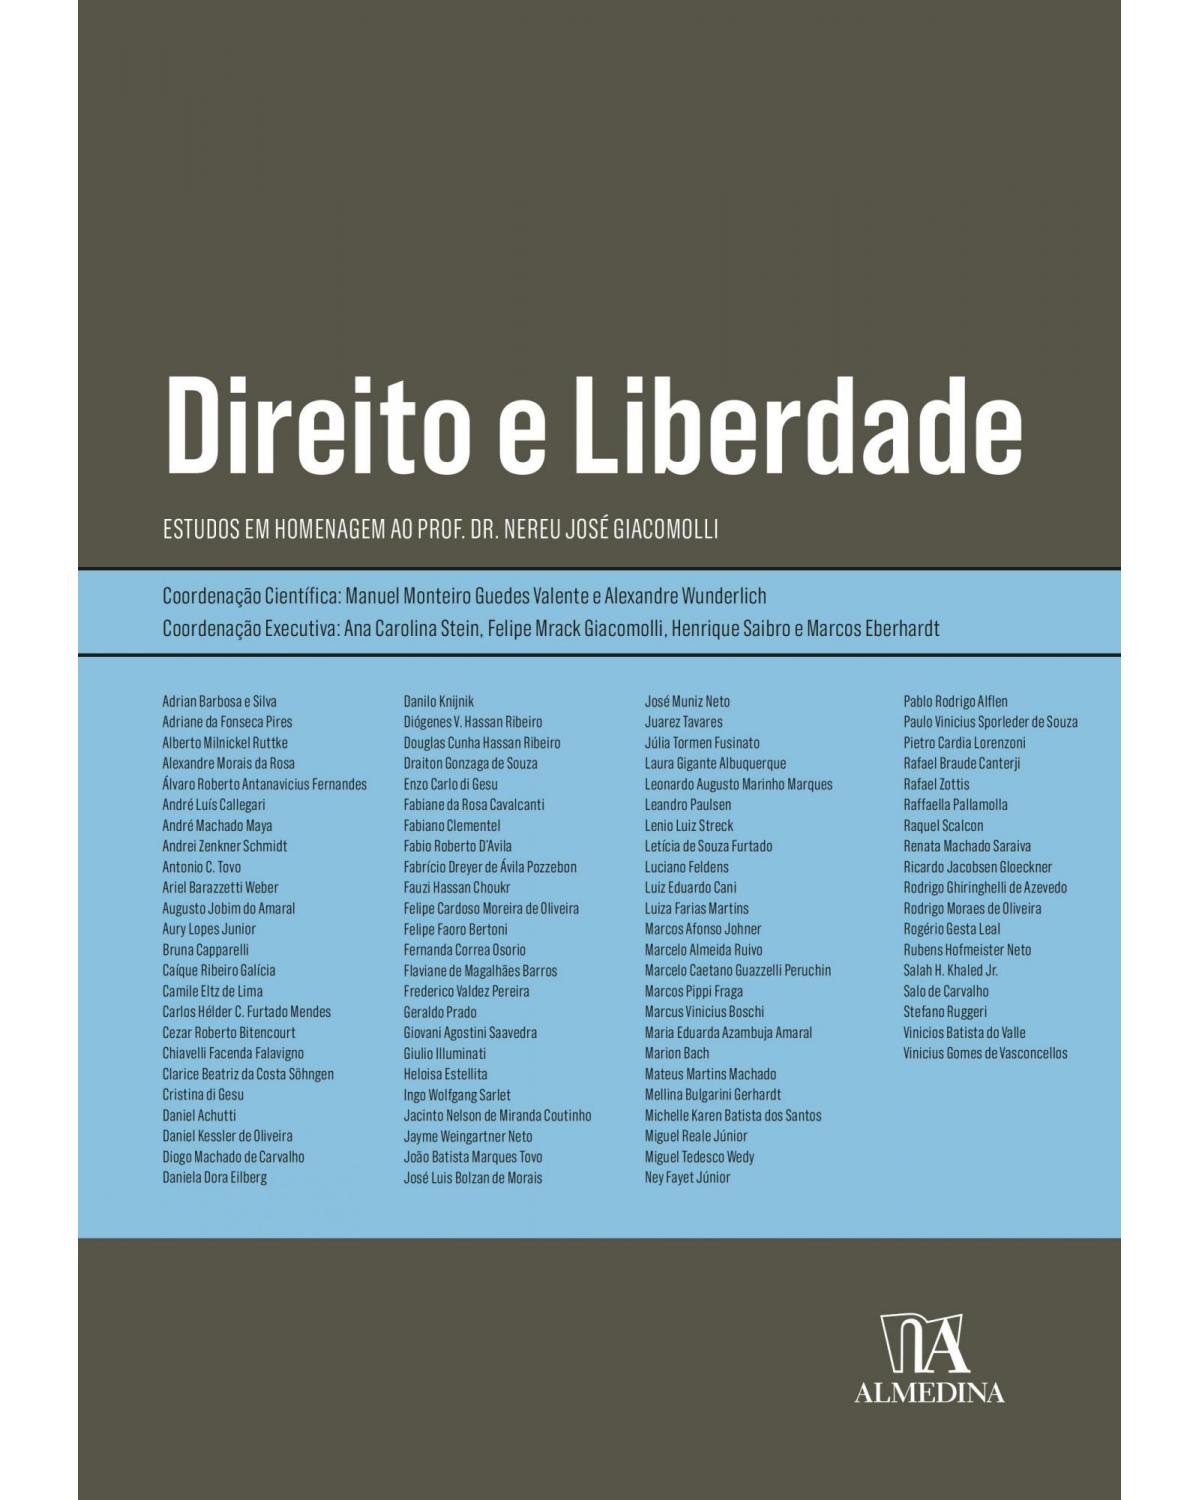 Direito e liberdade - estudos em homenagem ao professor doutor Nereu José Giacomolli - 1ª Edição | 2022